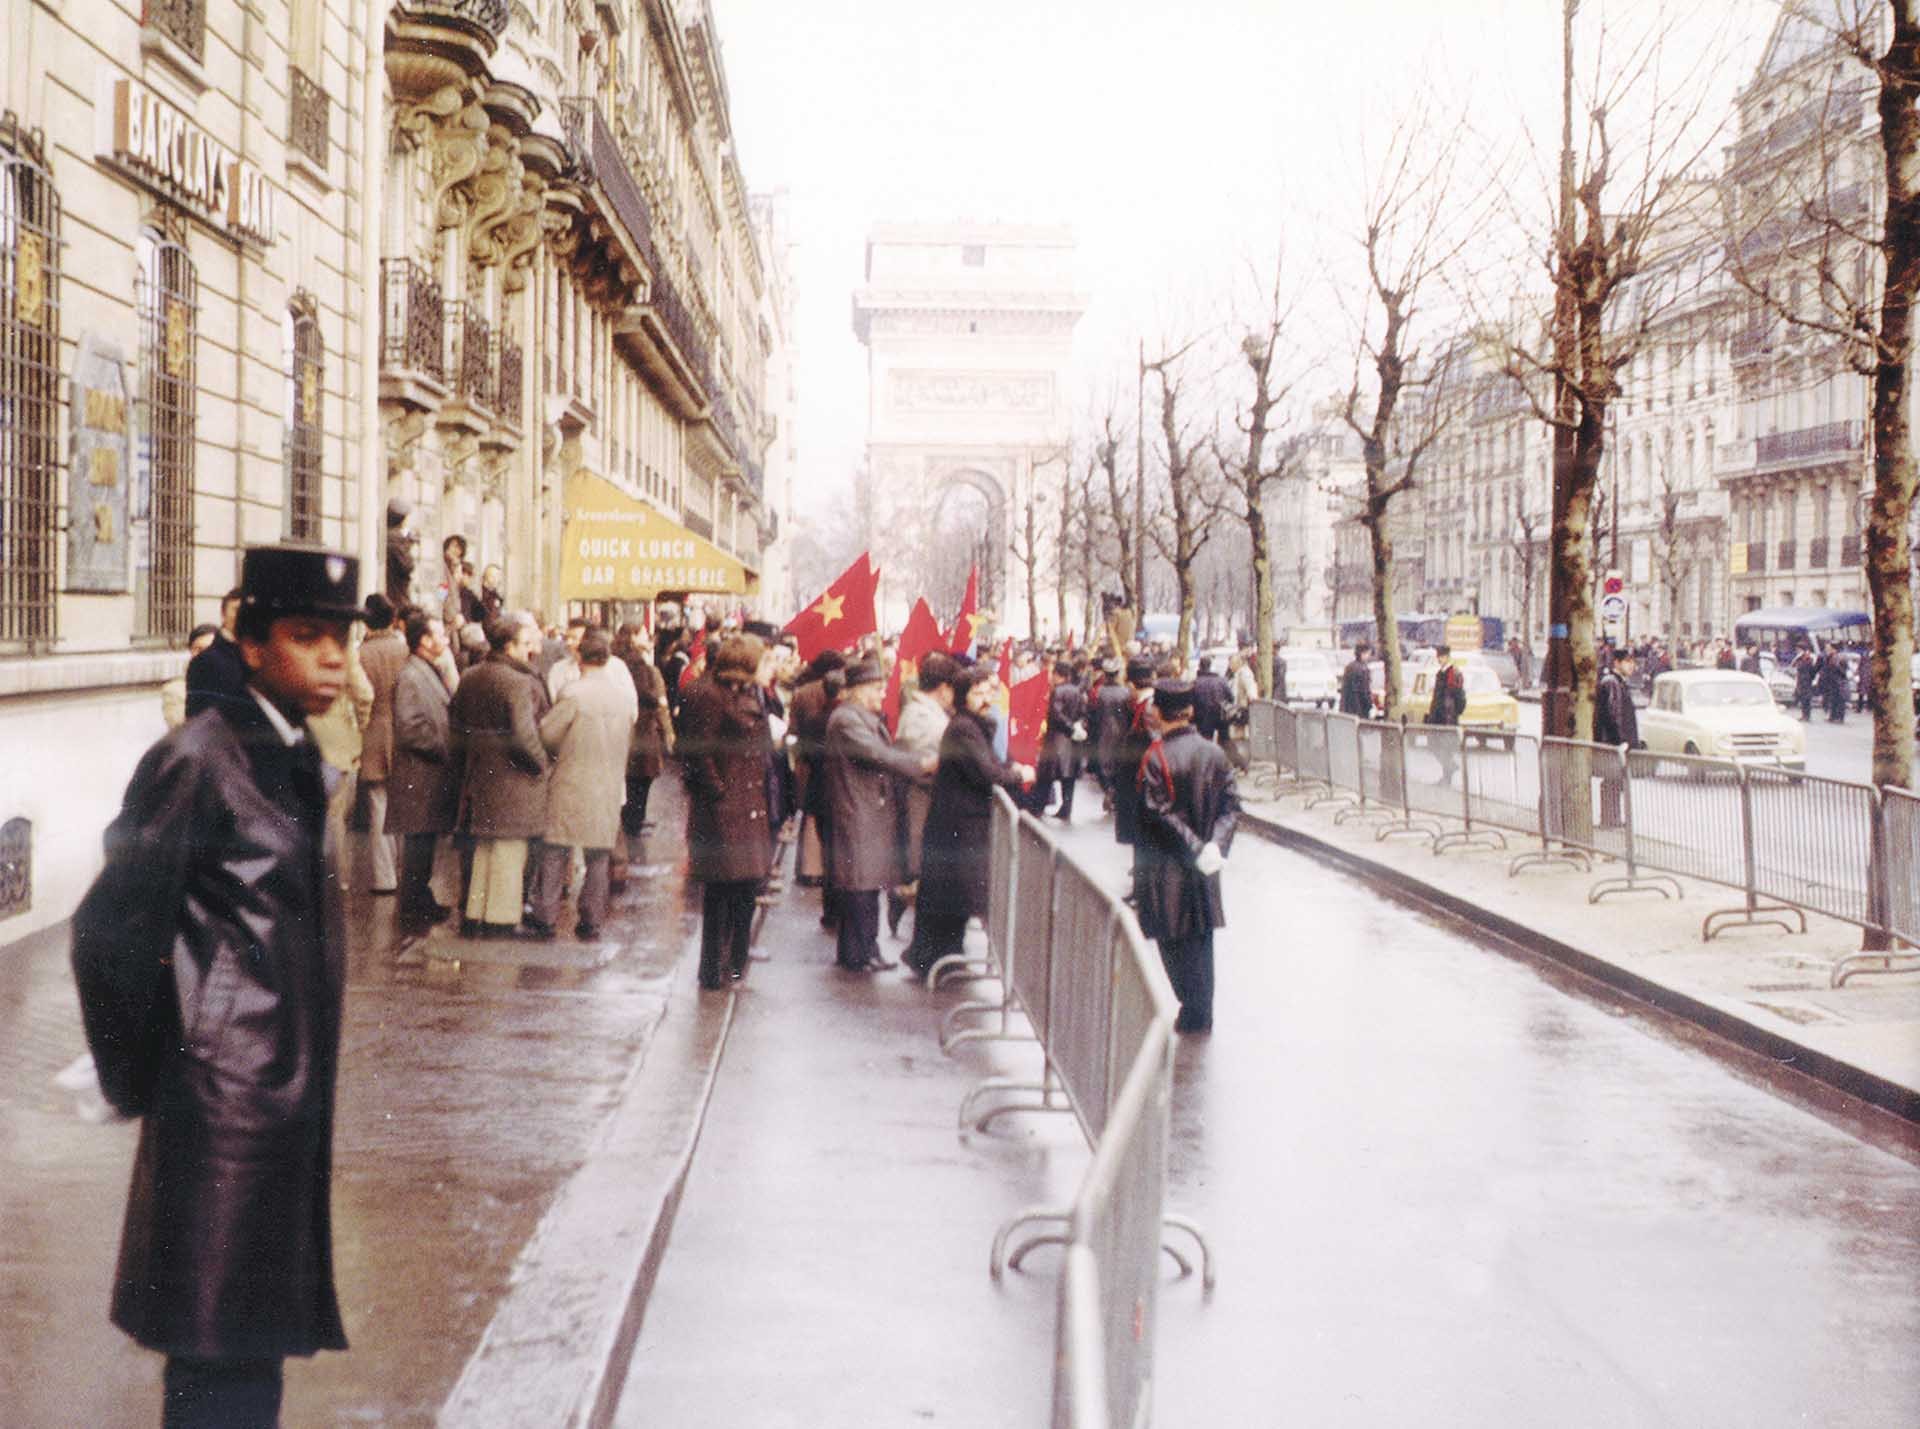 Quang cảnh trước Trung tâm Hội nghị Quốc tế ngày ký Hiệp định Paris, ngày 27/01/1973.